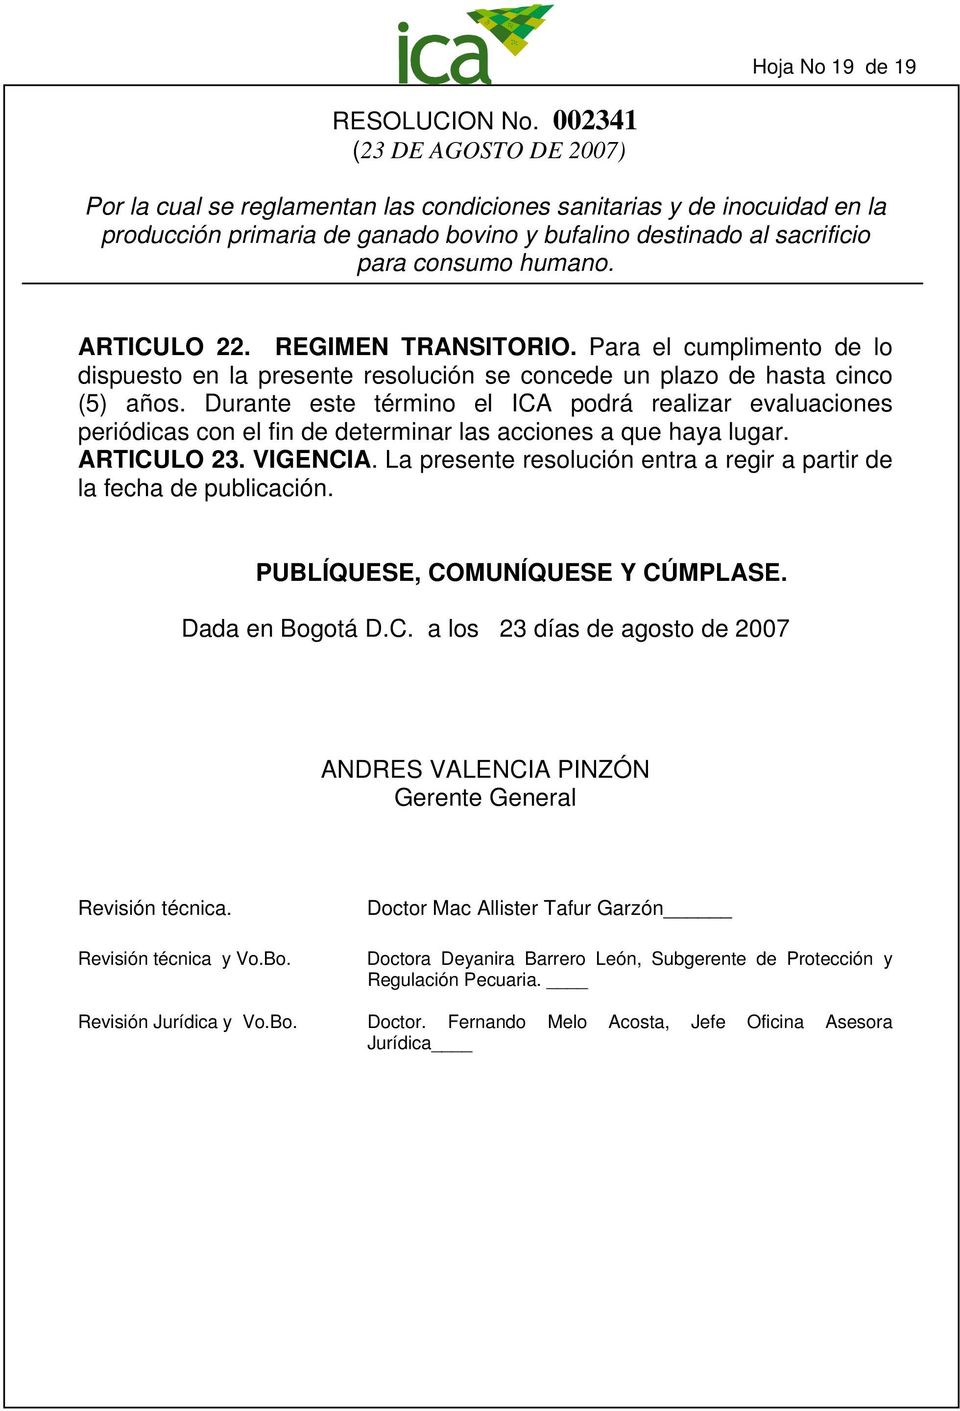 La presente resolución entra a regir a partir de la fecha de publicación. PUBLÍQUESE, COMUNÍQUESE Y CÚMPLASE. Dada en Bogotá D.C. a los 23 días de agosto de 2007 ANDRES VALENCIA PINZÓN Gerente General Revisión técnica.